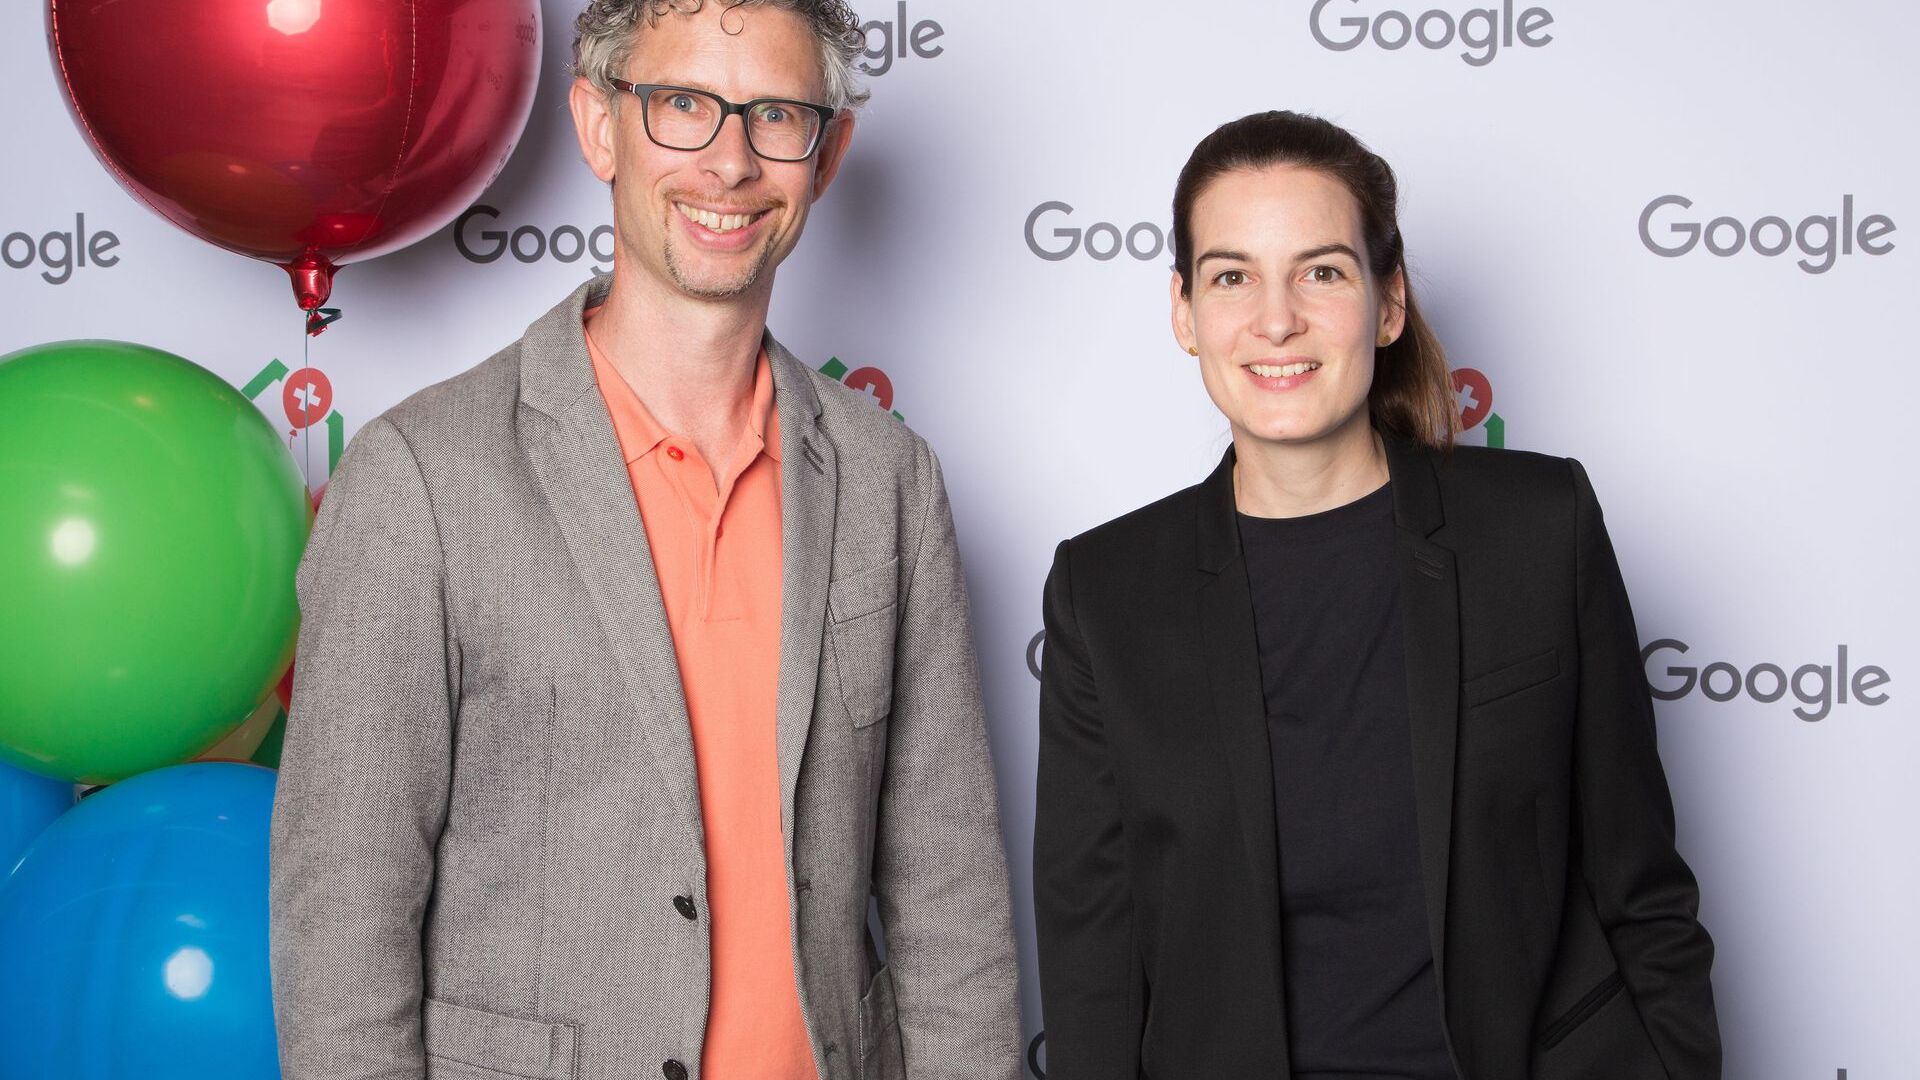 Samuel Leiser dhe Pia De Carli, ekipi mediatik Google Switzerland, morën pjesë në hapjen zyrtare të kampusit të ri Google Europaallee në Cyrih më 27 qershor 2022